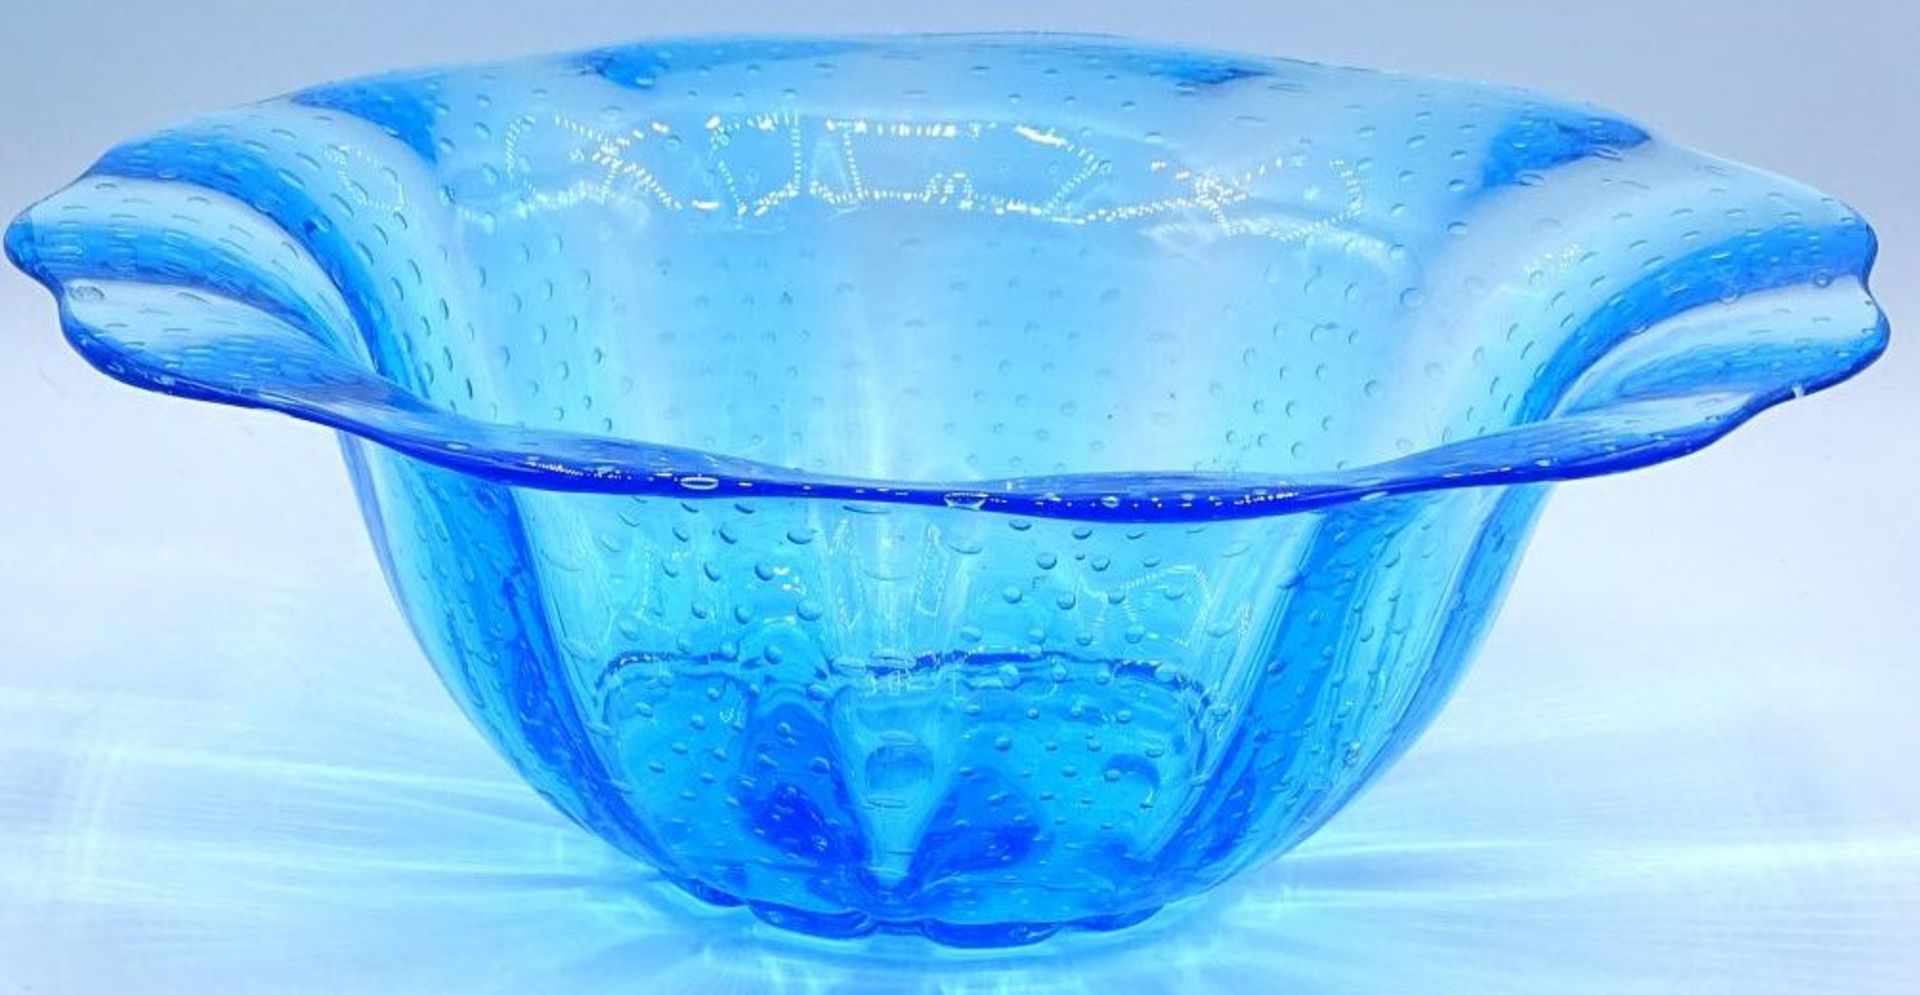 grosse Kristallschale, blau getönt, mit Luftbläschen, H-11 cm, D-31 cm, Handarbe